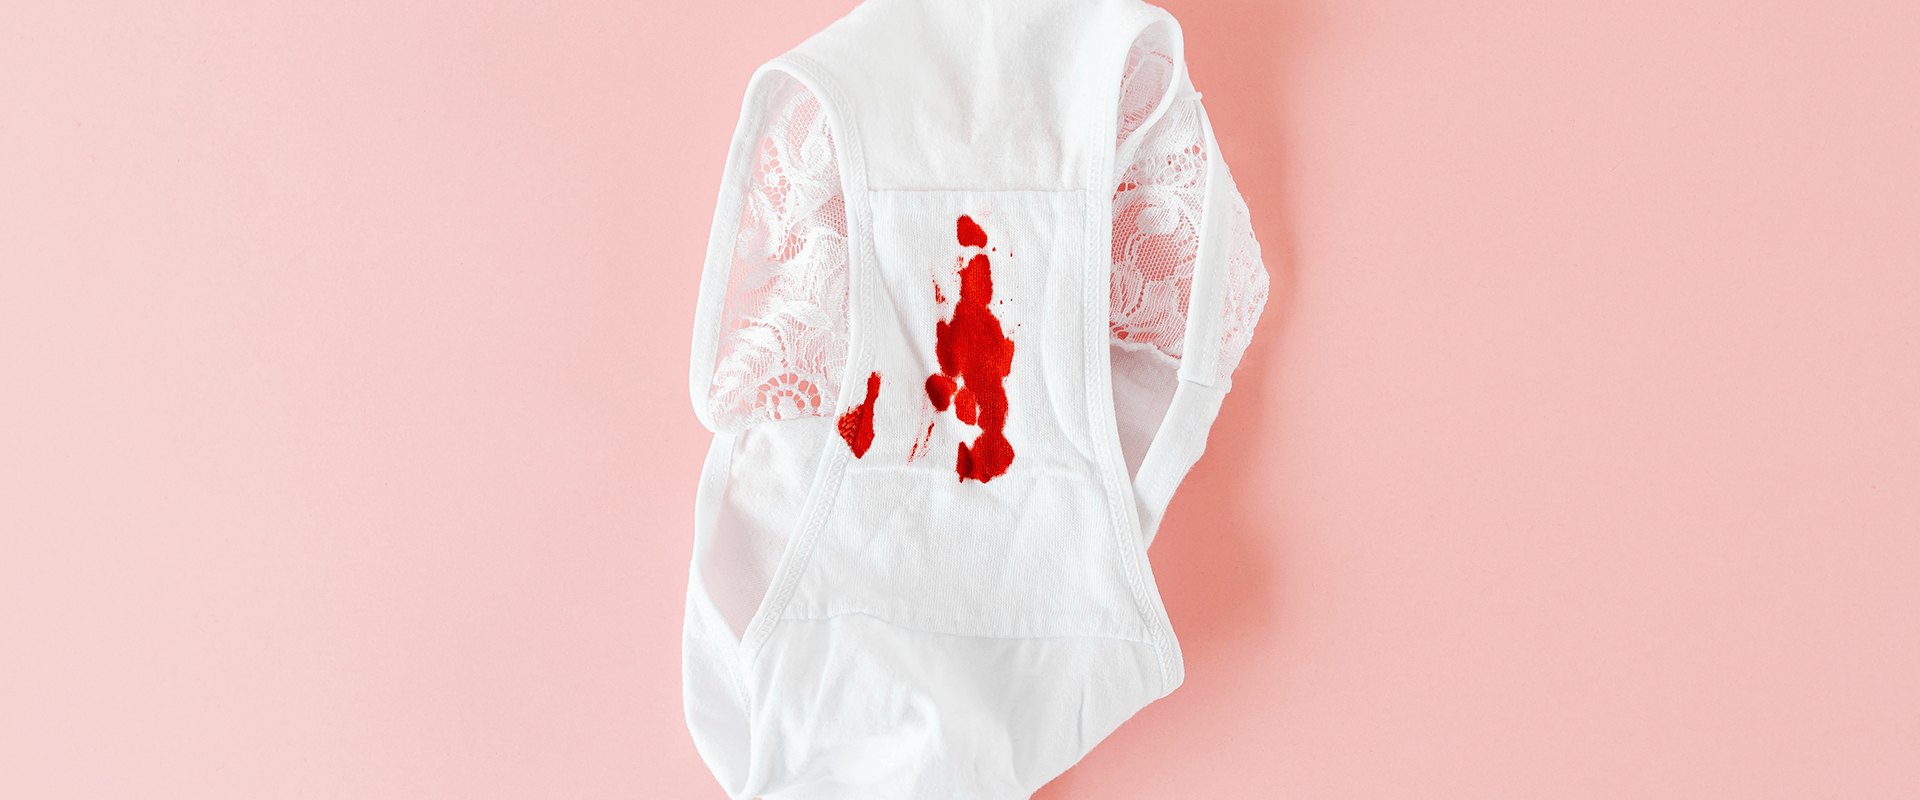 Sangue rosado apos menstruacao